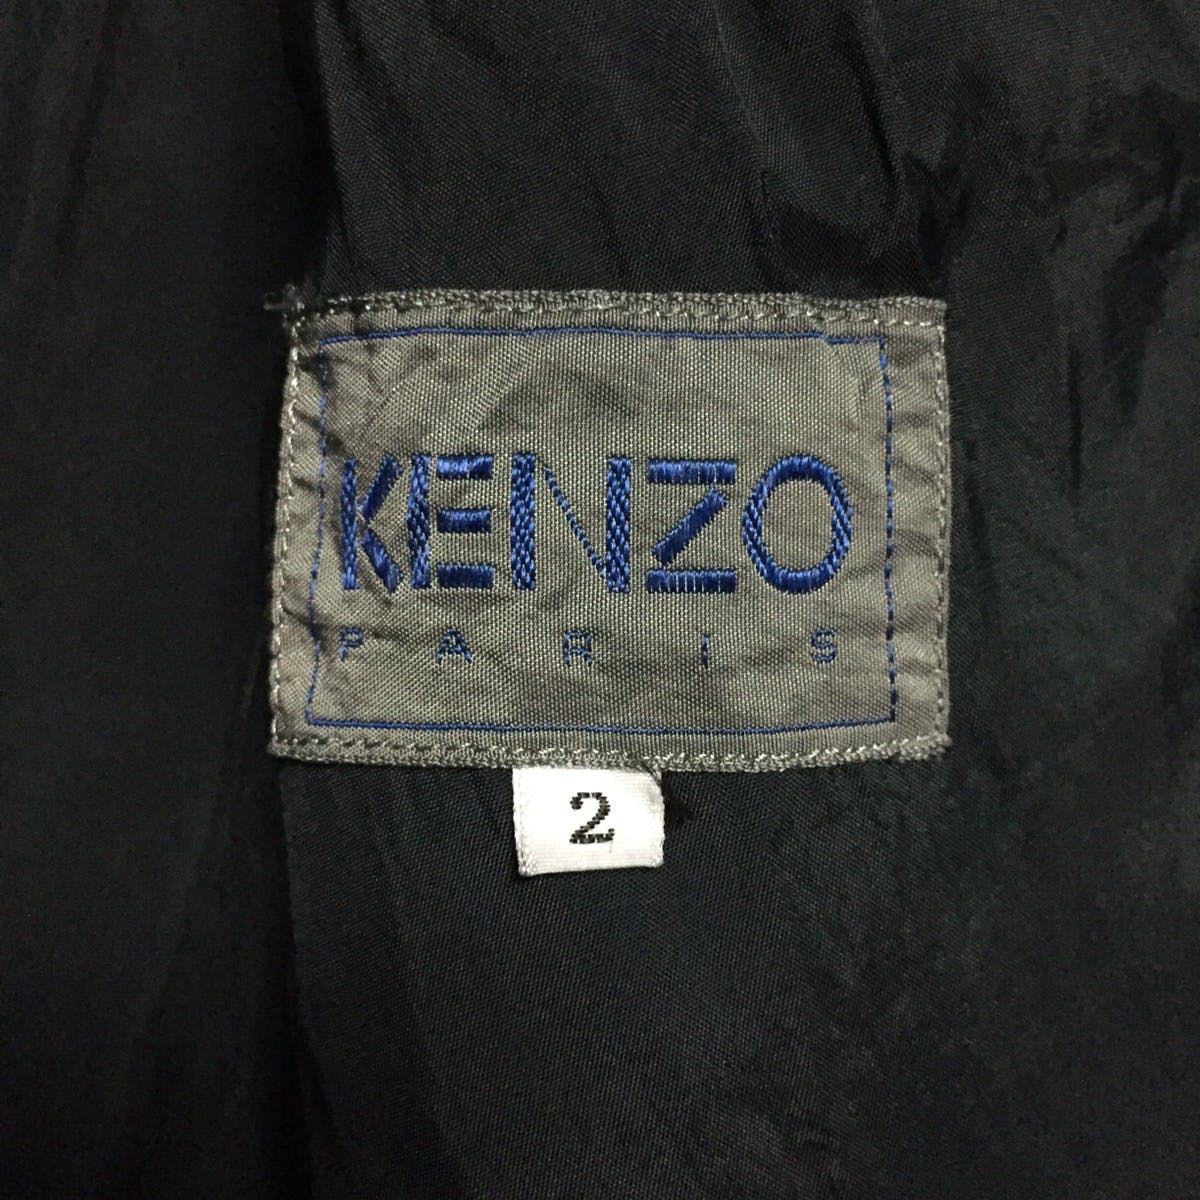 Kenzo Zebra Stripes Jacket Coat Made in Japan - 18